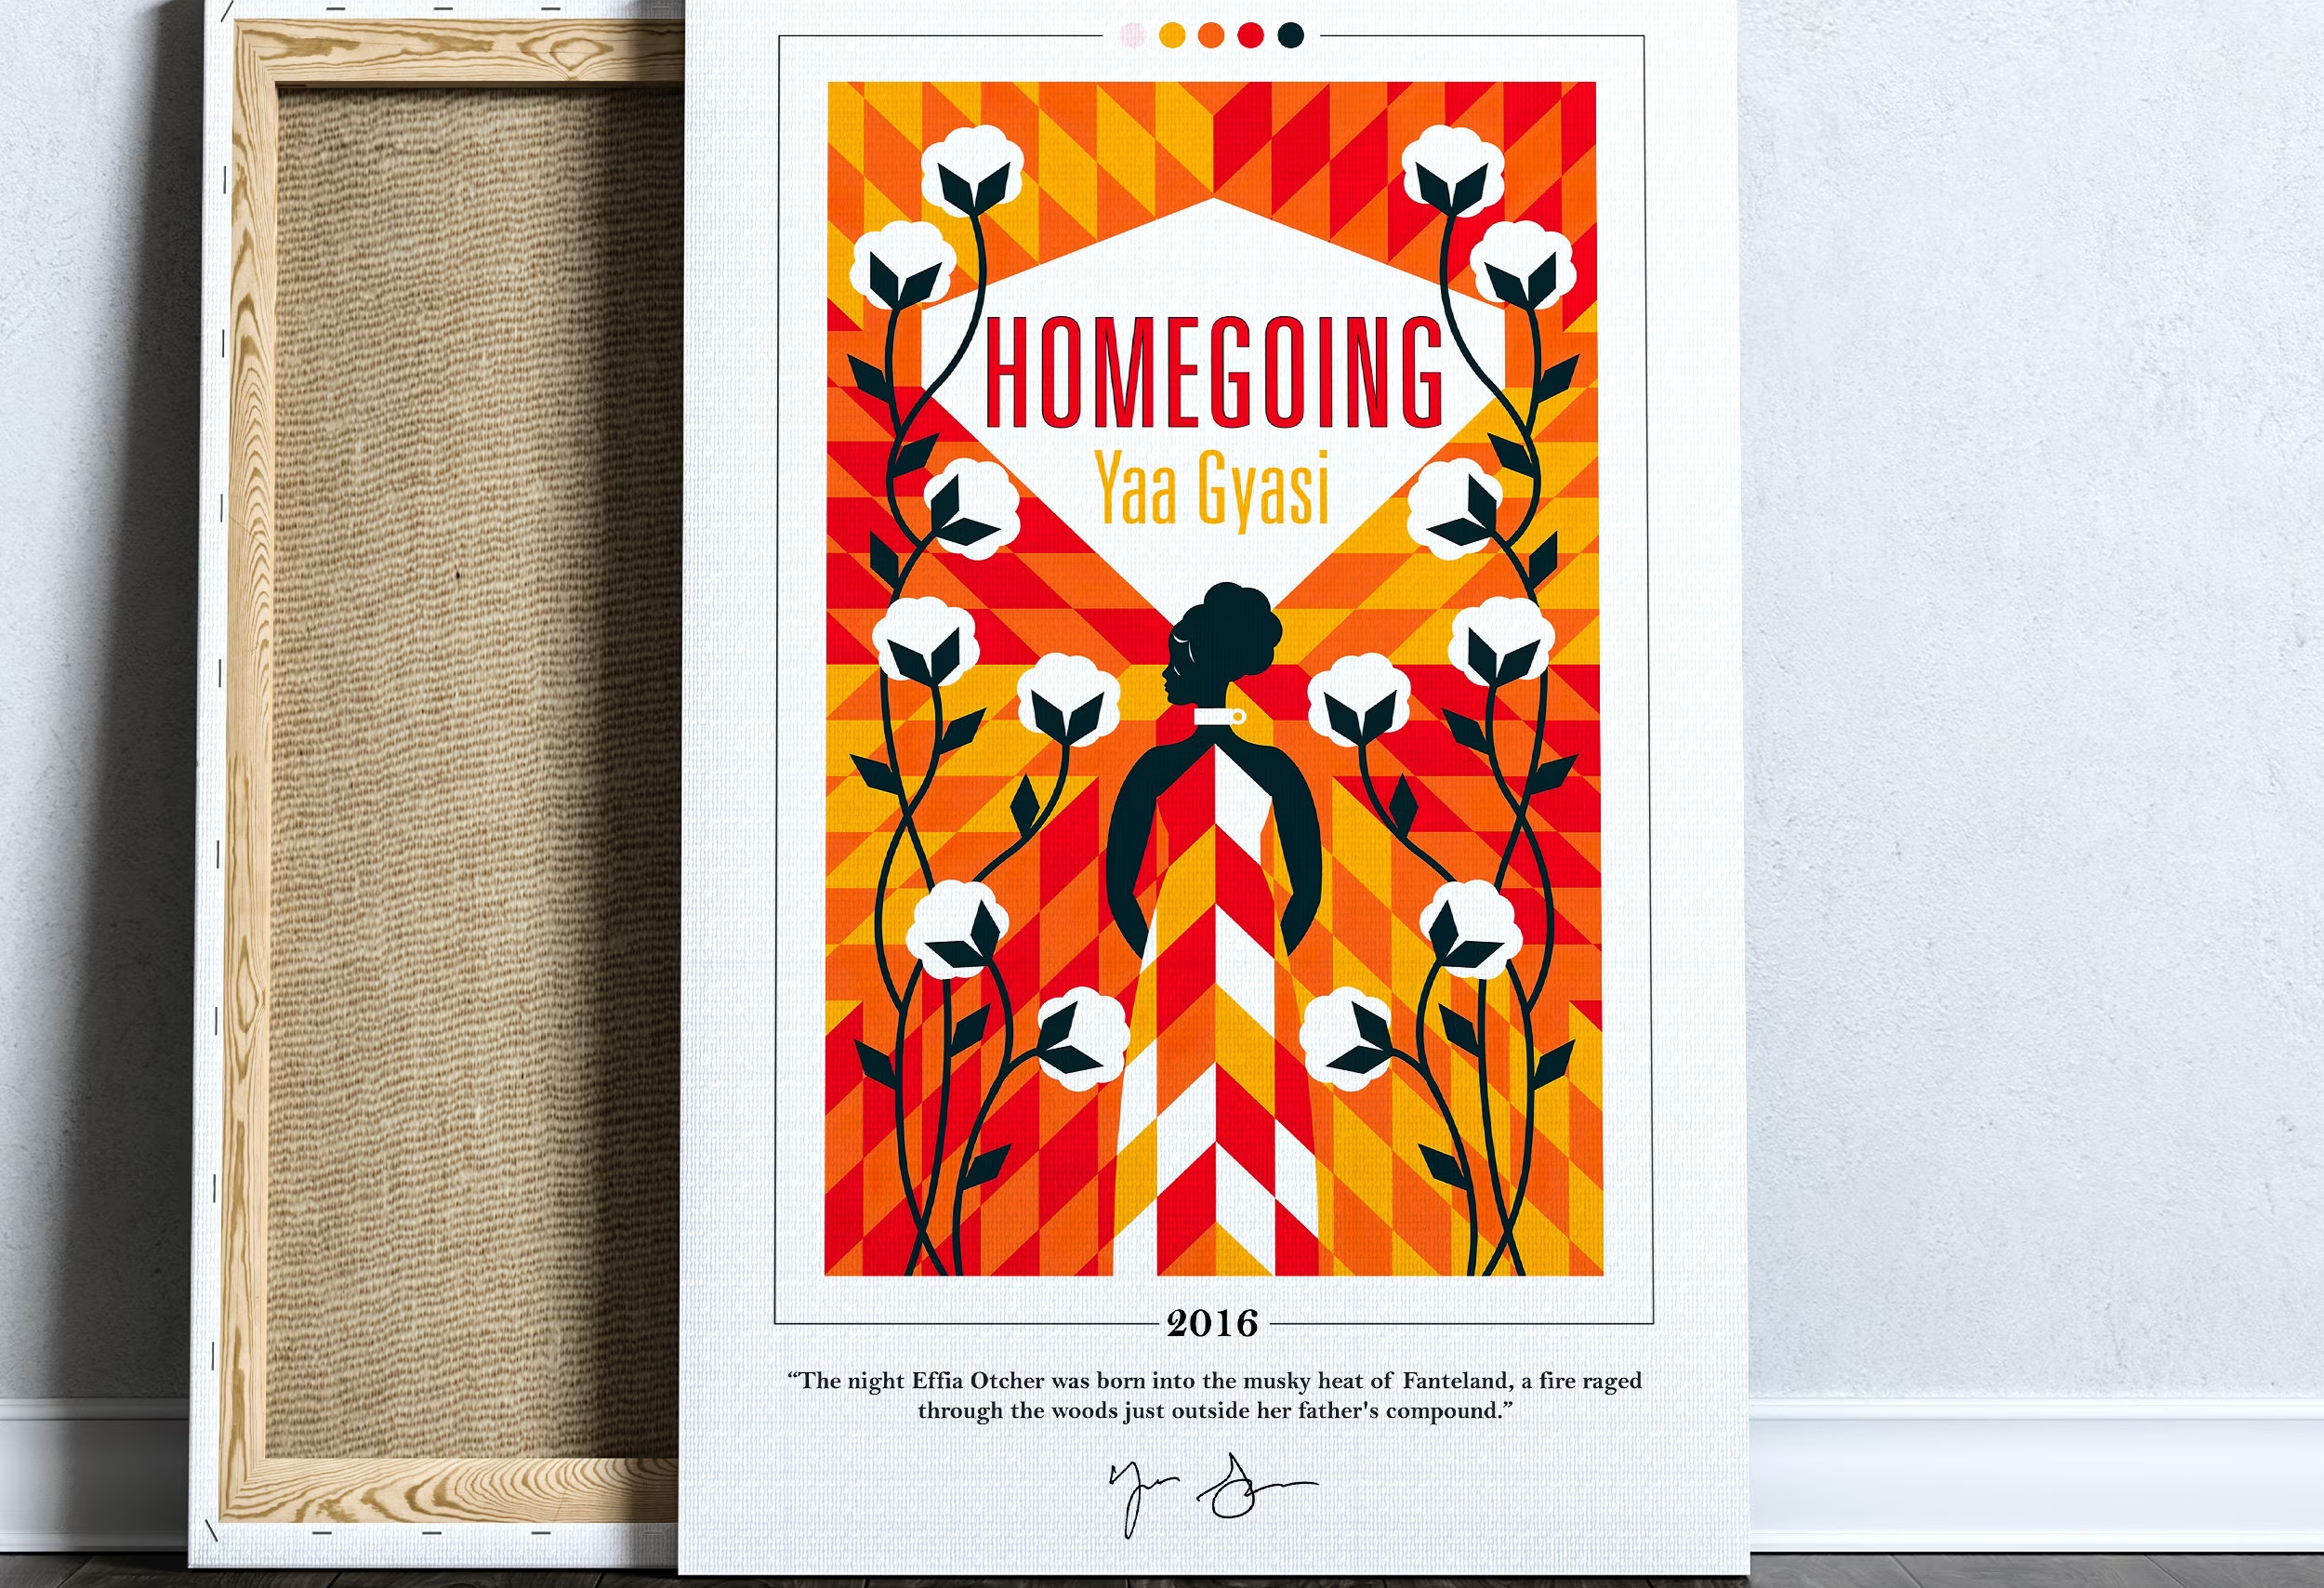 Thiết kế bìa sách Homegoing 2016 (Ảnh: Etsy)